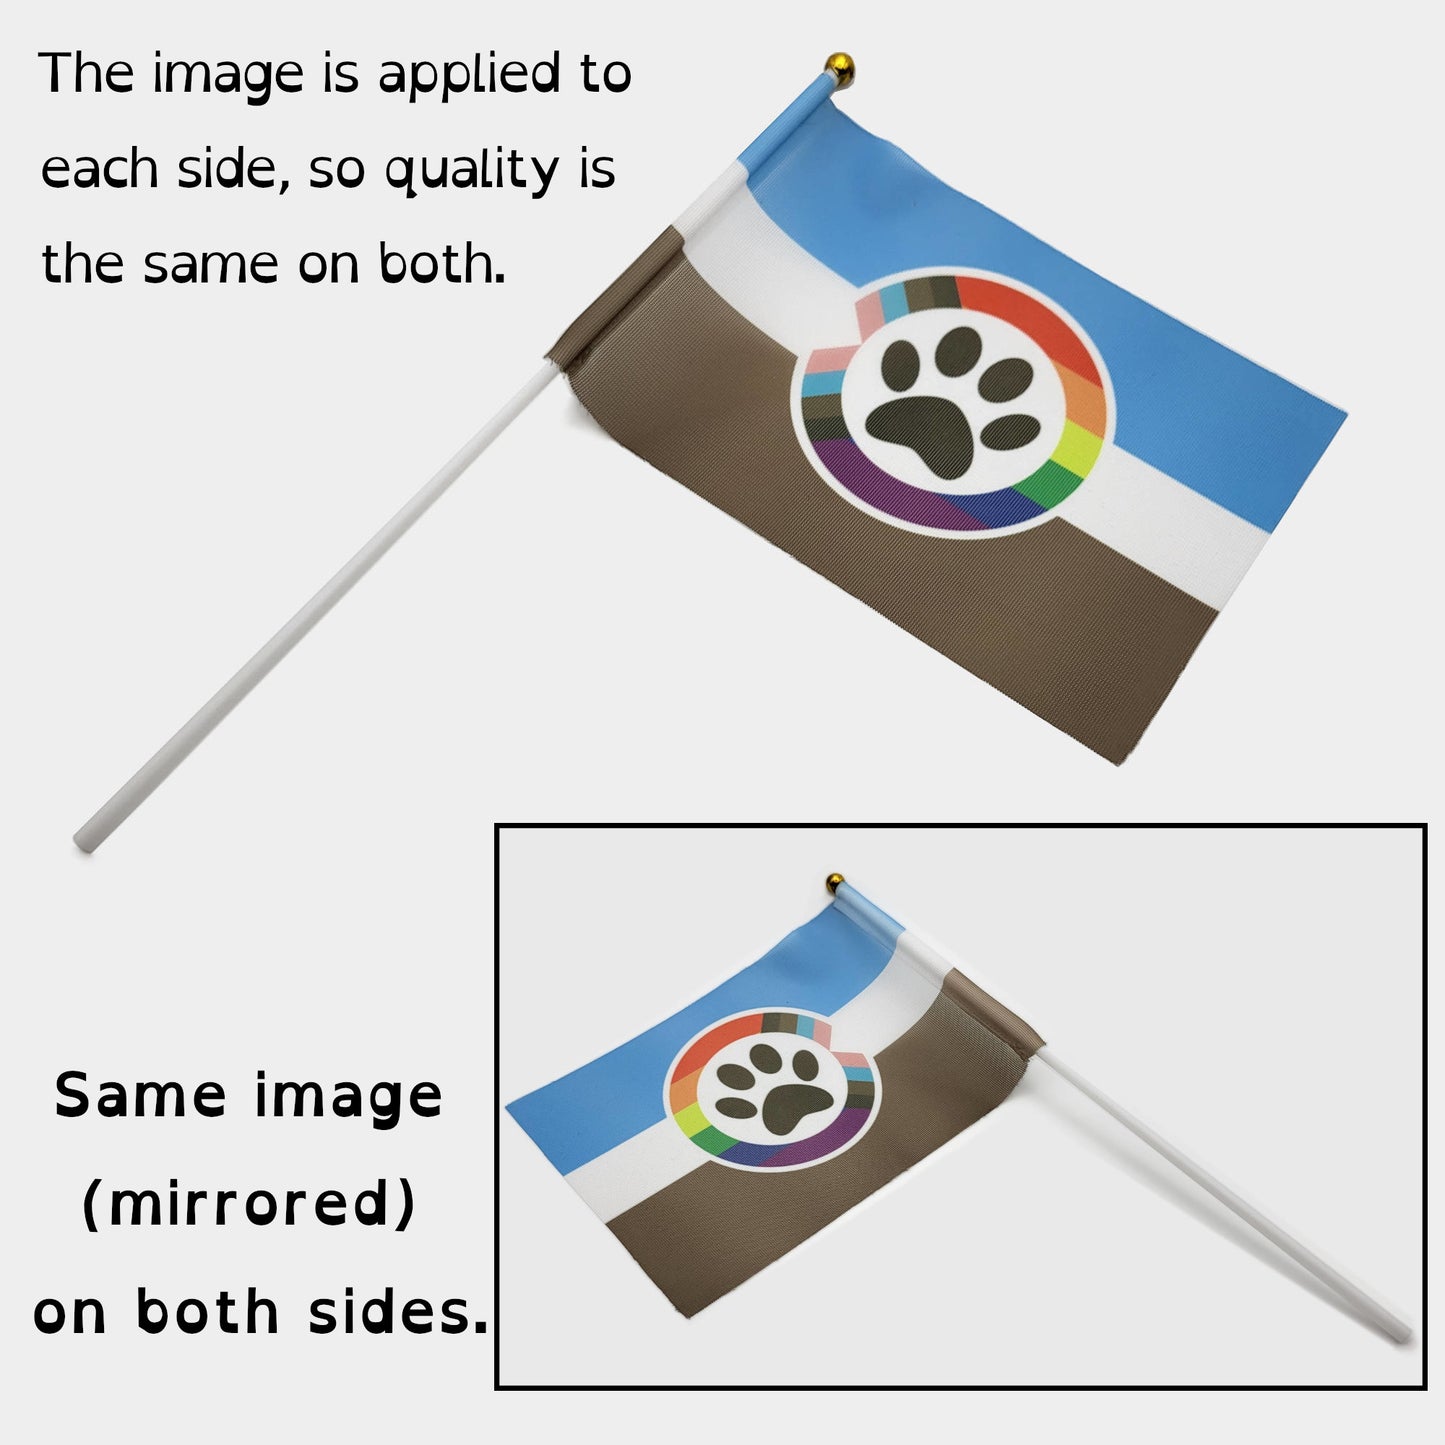 Drapeaux de main/de bureau Polyamory Pride | Choisissez votre drapeau | Double face